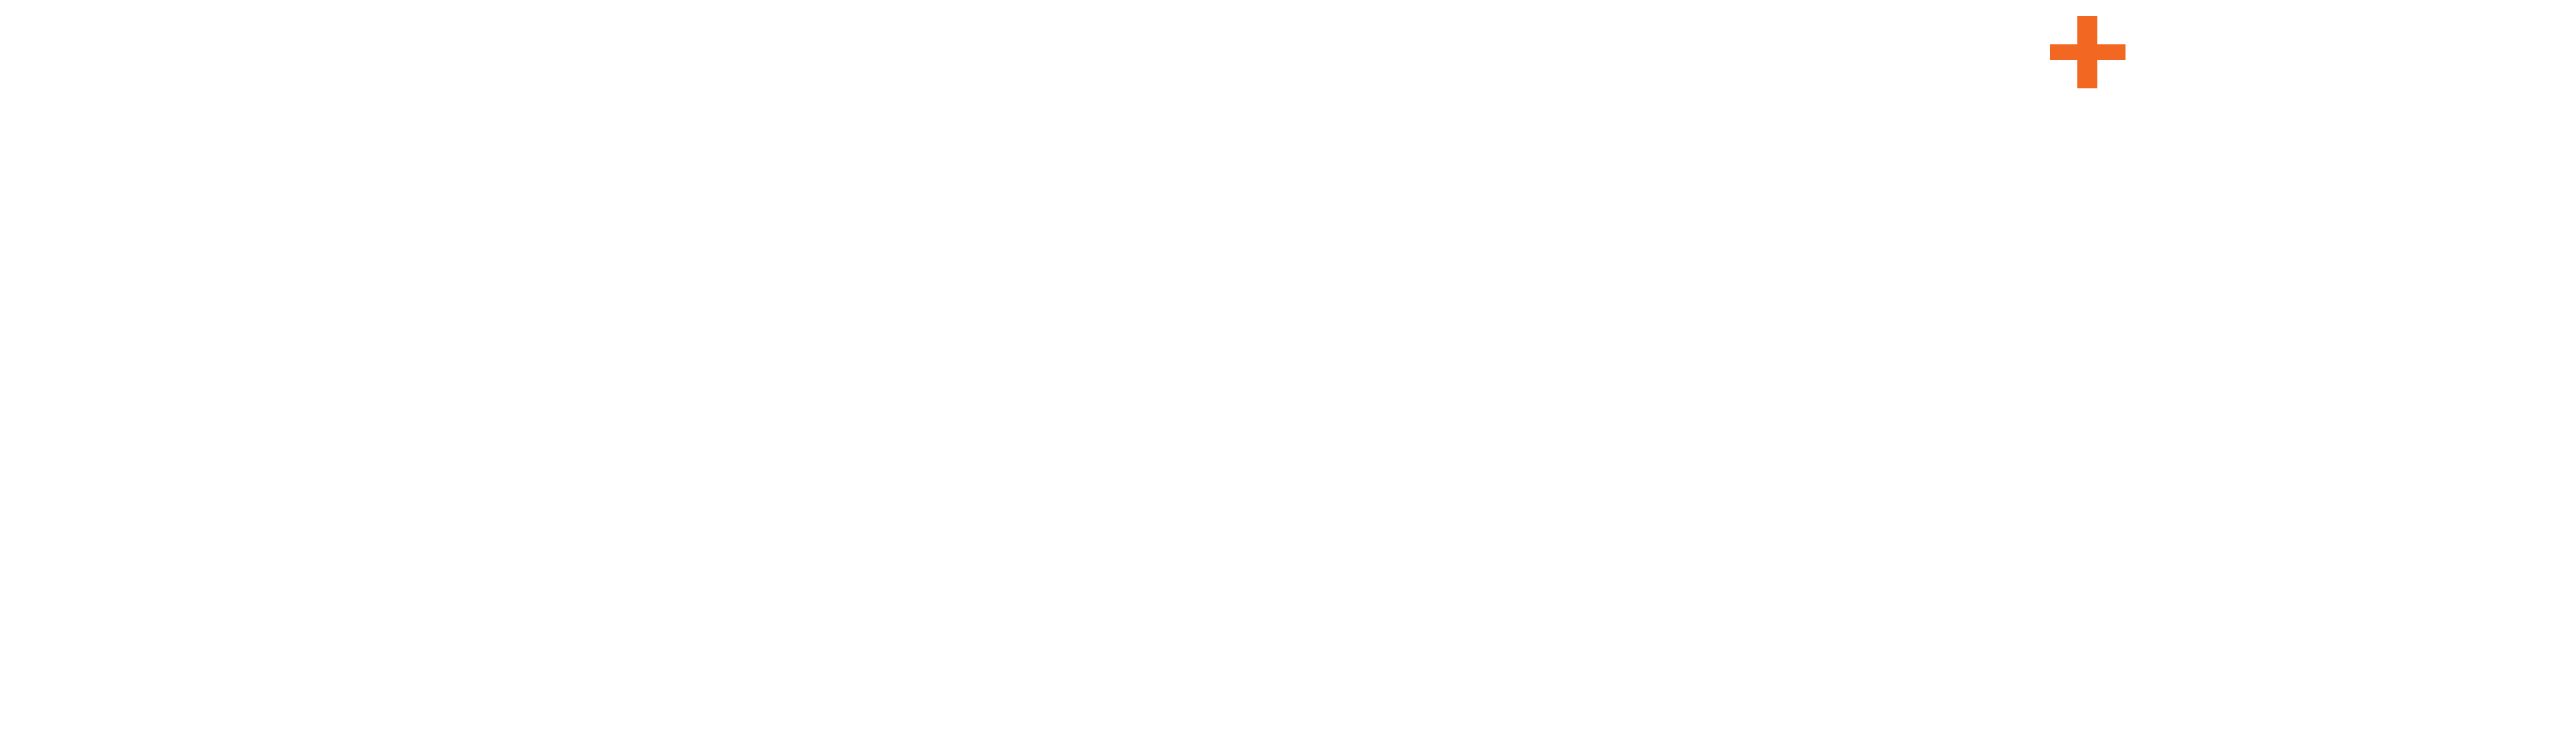 VVK Agency